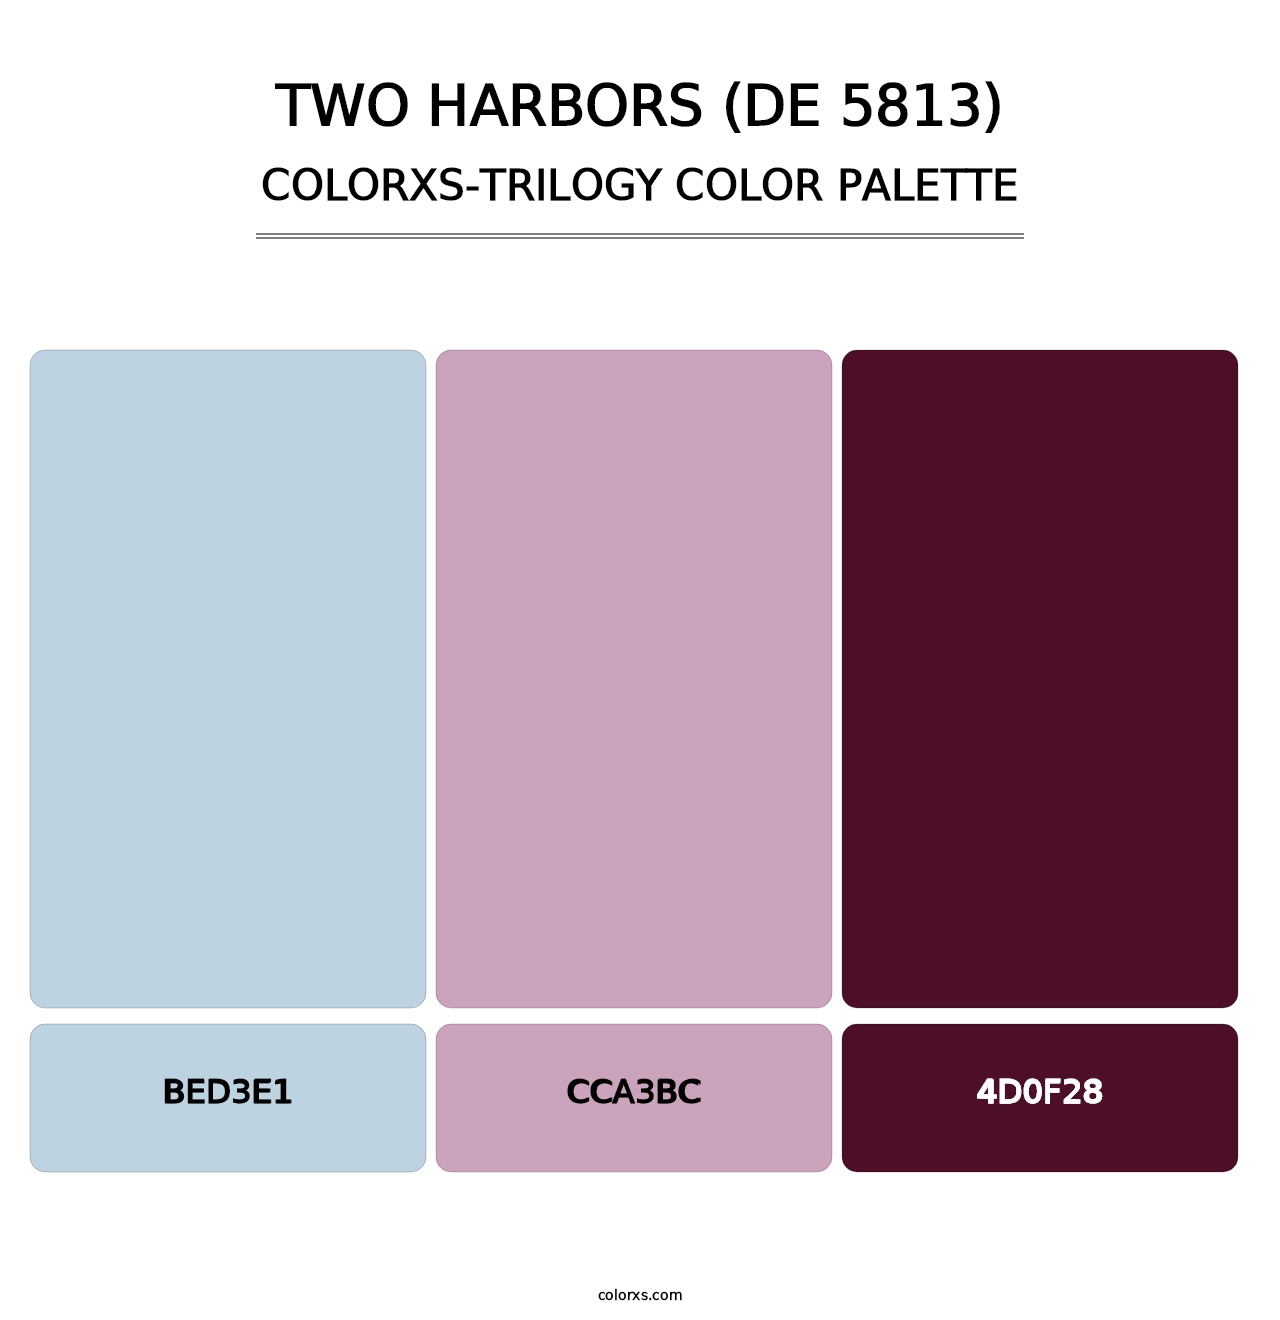 Two Harbors (DE 5813) - Colorxs Trilogy Palette